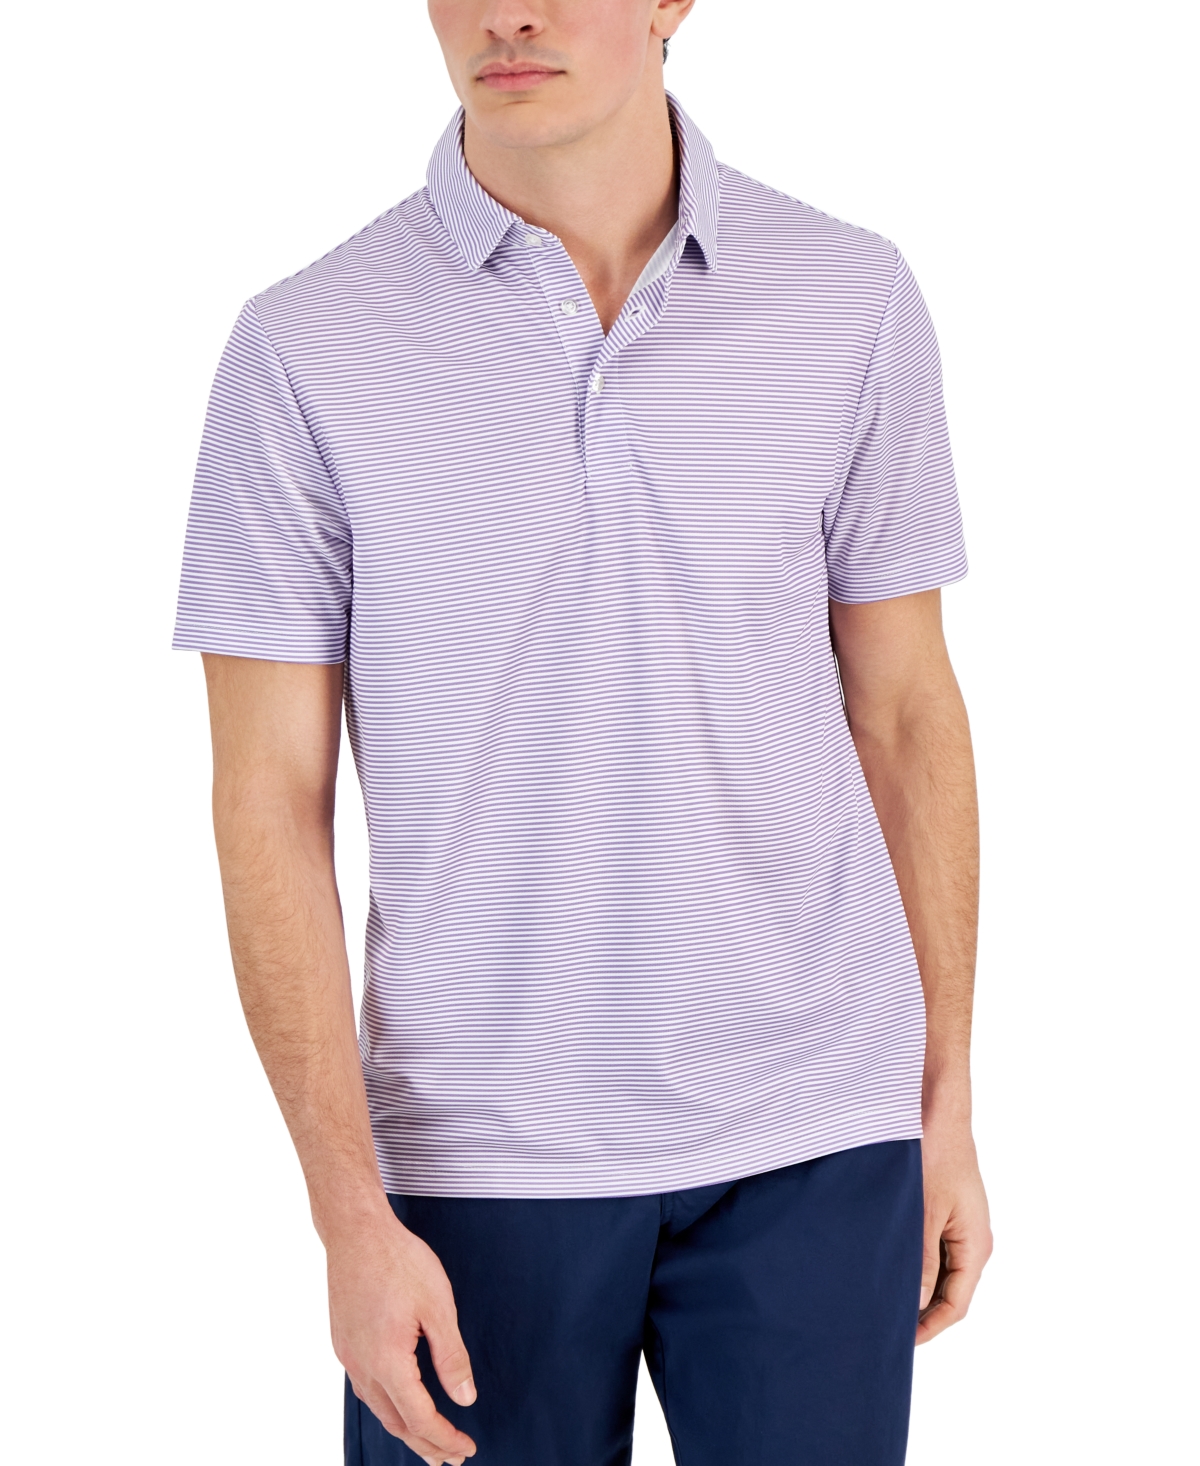 Men's Feeder Stripe Short Sleeve Tech Polo Shirt, Created for Macy's - Plush Lavender